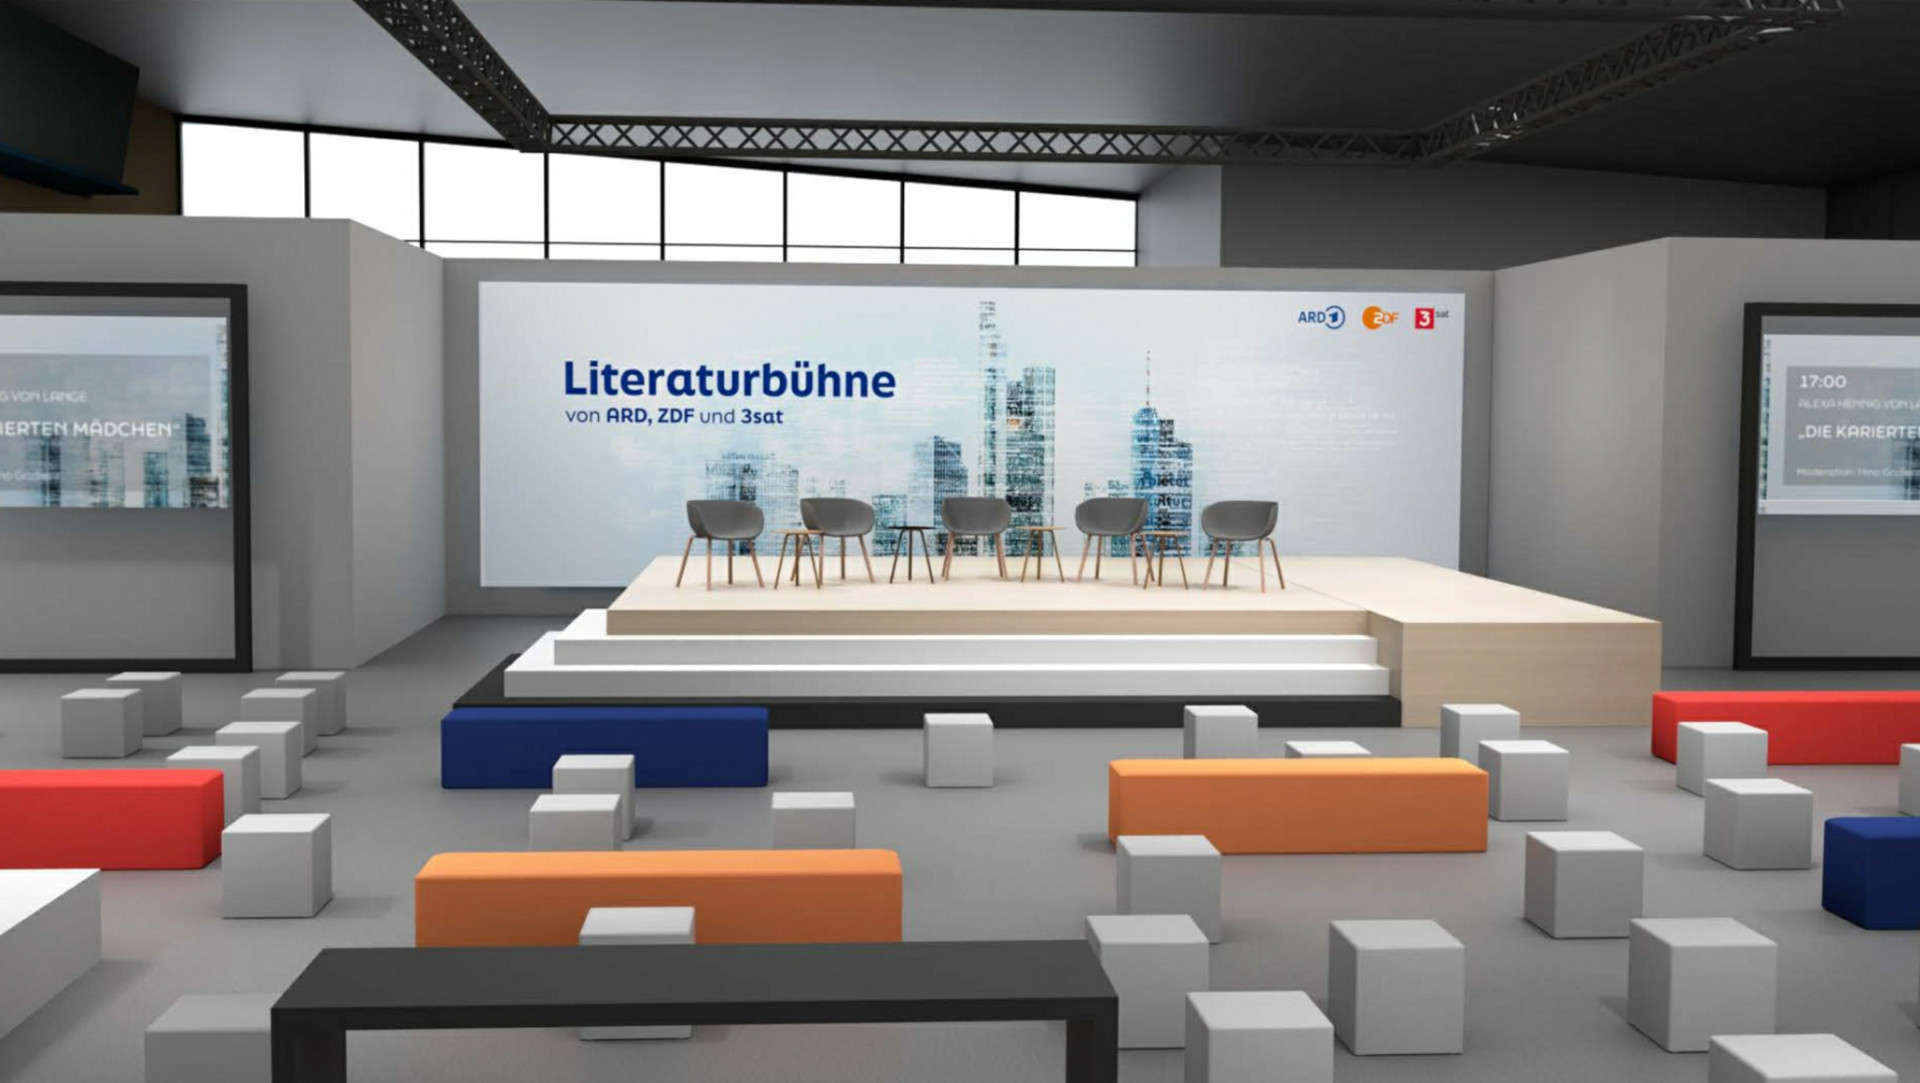 Modell der gemeinsame Literaturbühne von ARD, ZDF und 3sat. (c) ZDF/hr/Natalie Friedmann